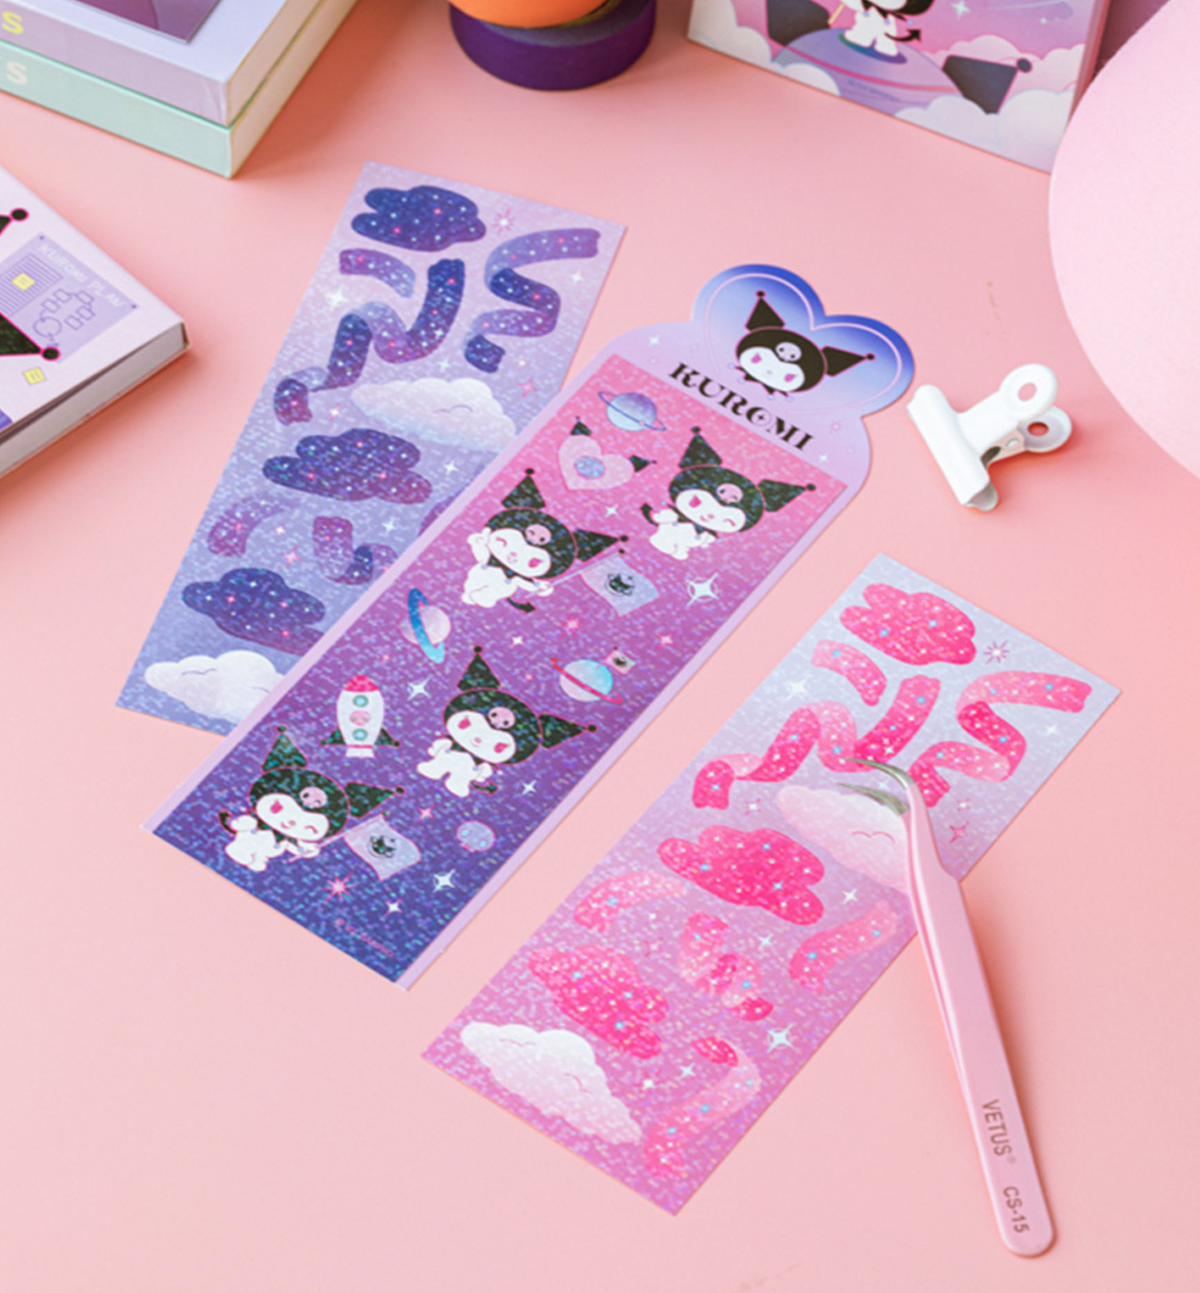 Hatsune Miku Stickers – Pearl River Mart